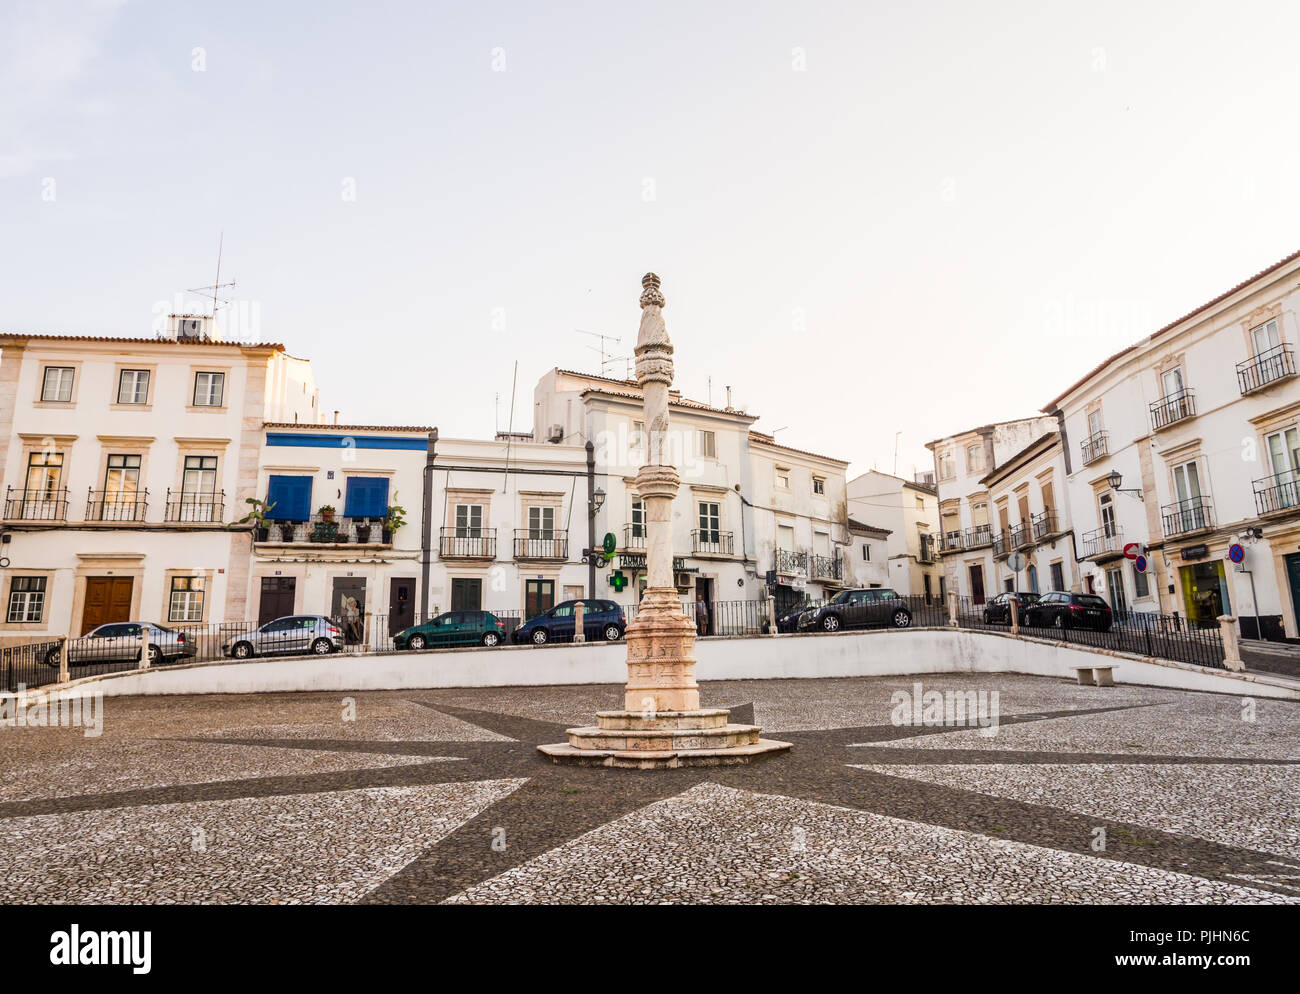 ESTREMOZ, PORTUGAL - 23 AUGUST, 2018: die zentralen Platz von Estremoz Marmor Pranger im manuelinischen Stil Stockfoto